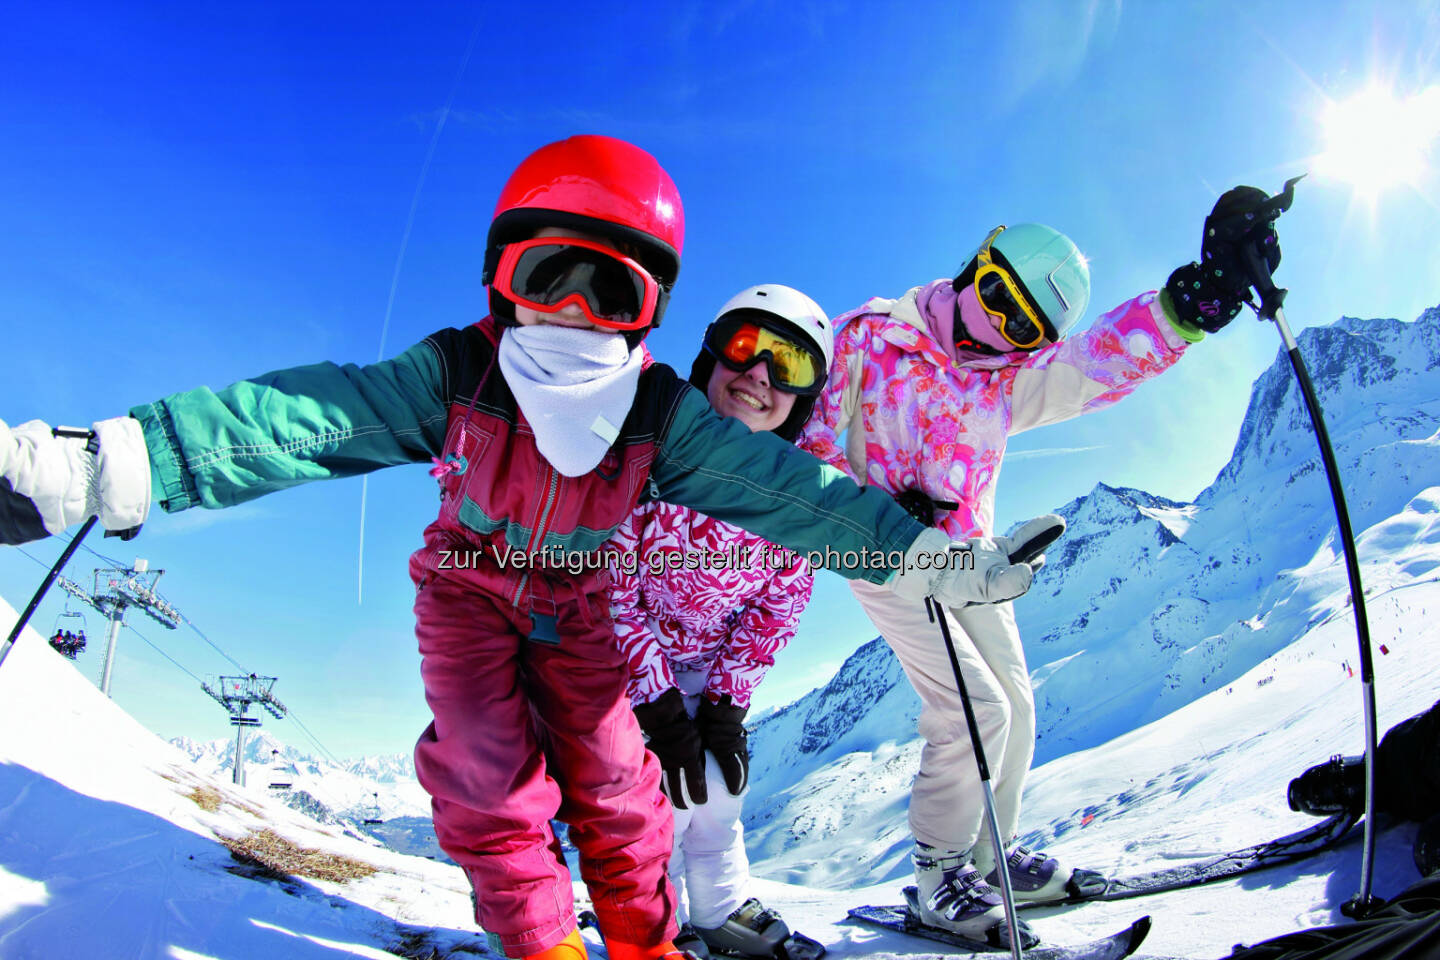 Mit ski4school kinderleicht skifahren erlernen, Winter, Skiregion; Fotocredit: Fotolia/Blaguss